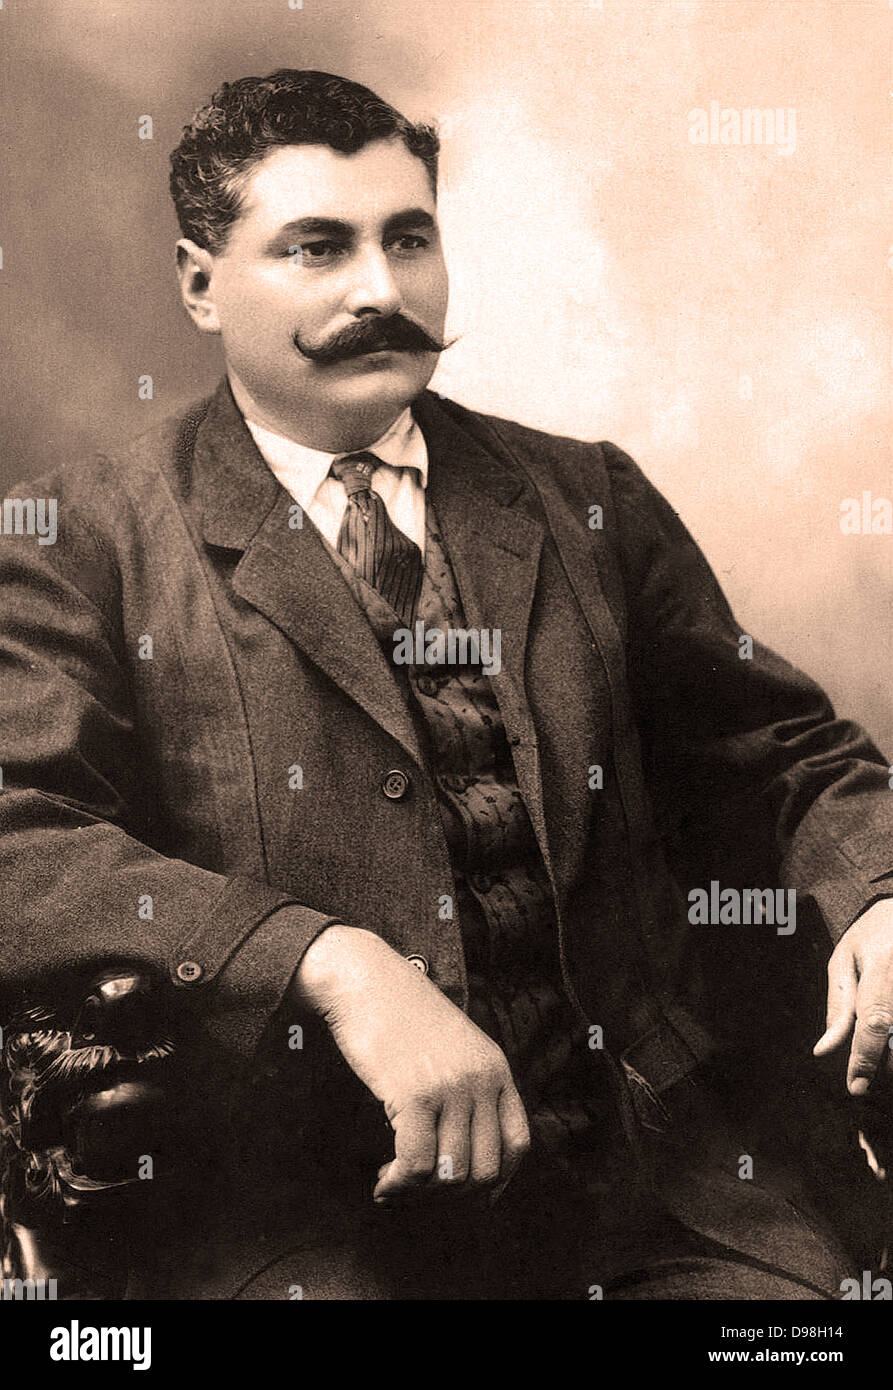 Eulalio Gutiérrez Ortiz (2 de febrero de 1881 - 12 de agosto de 1939) fue elegido presidente provisional de México durante la Convención de Aguascalientes y dirigió el país durante unos pocos meses entre el 6 de noviembre de 1914 y 16 de enero de 1915. Foto de stock